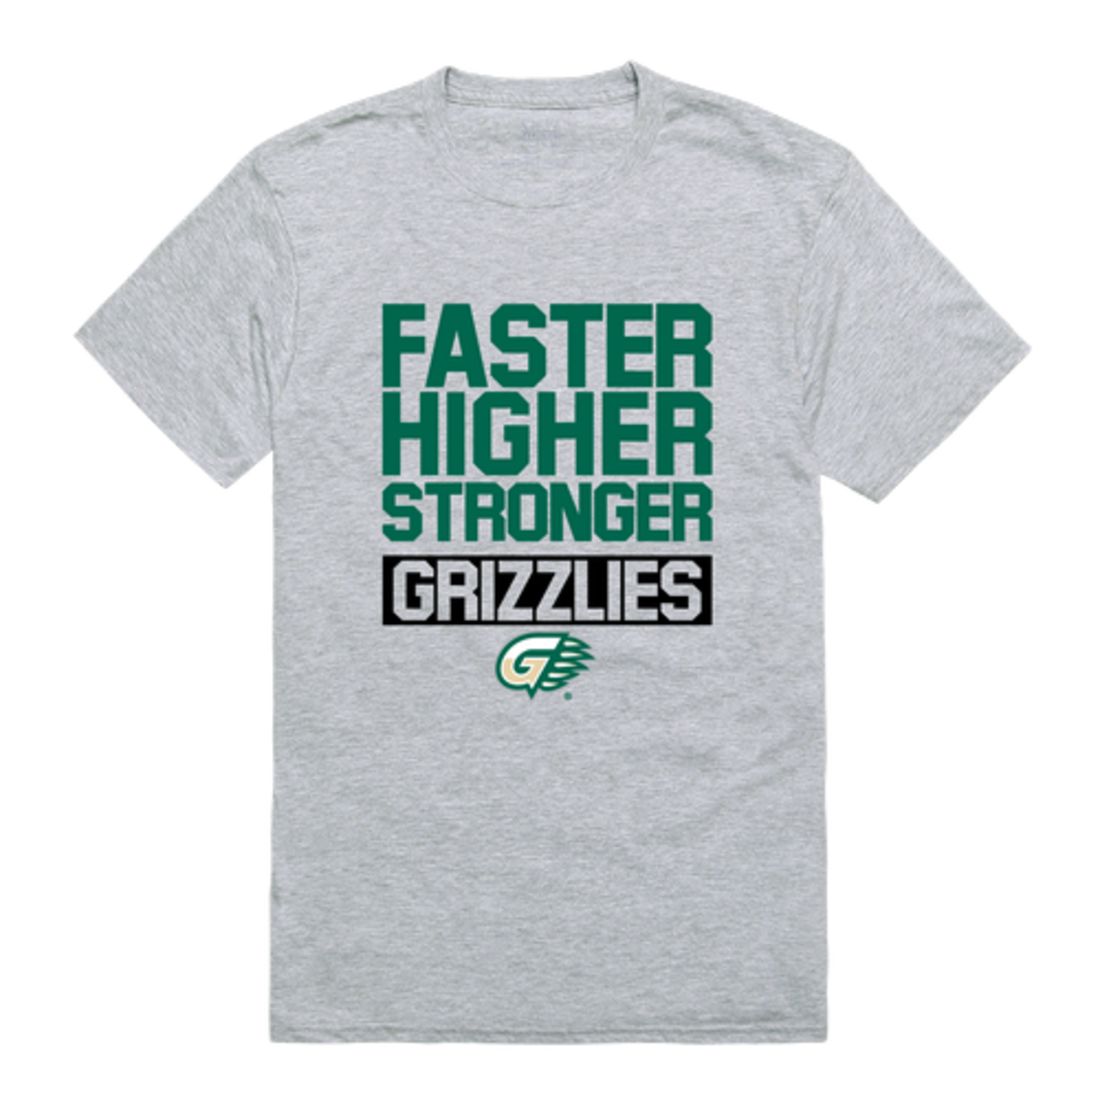 Georgia Gwinnett College Grizzlies Workout T-Shirt Tee